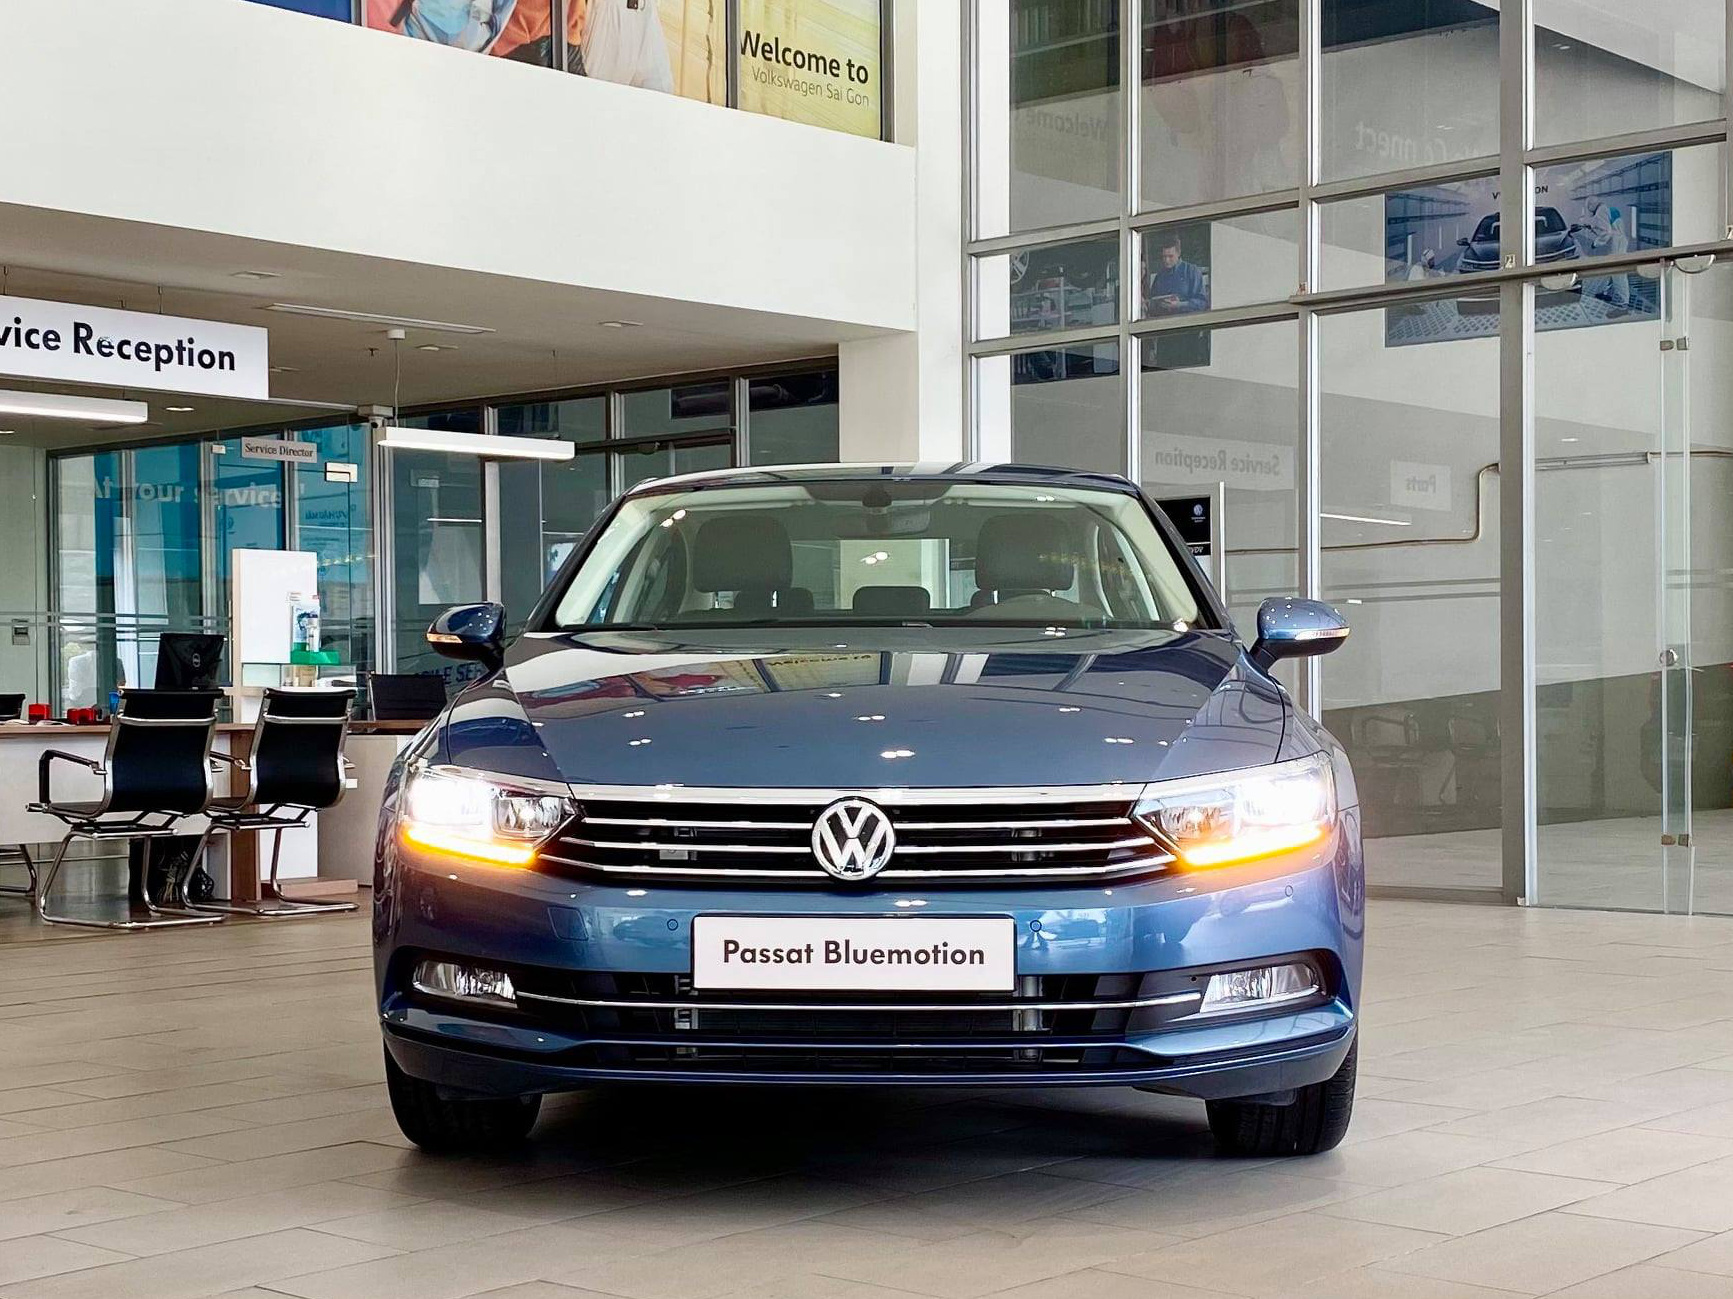 Volkswagen khuyến mại tất tay: Passat giảm 200 triệu còn ngang Camry, Tiguan Allspace dọn kho giảm 100 triệu cạnh tranh GLC - Ảnh 1.